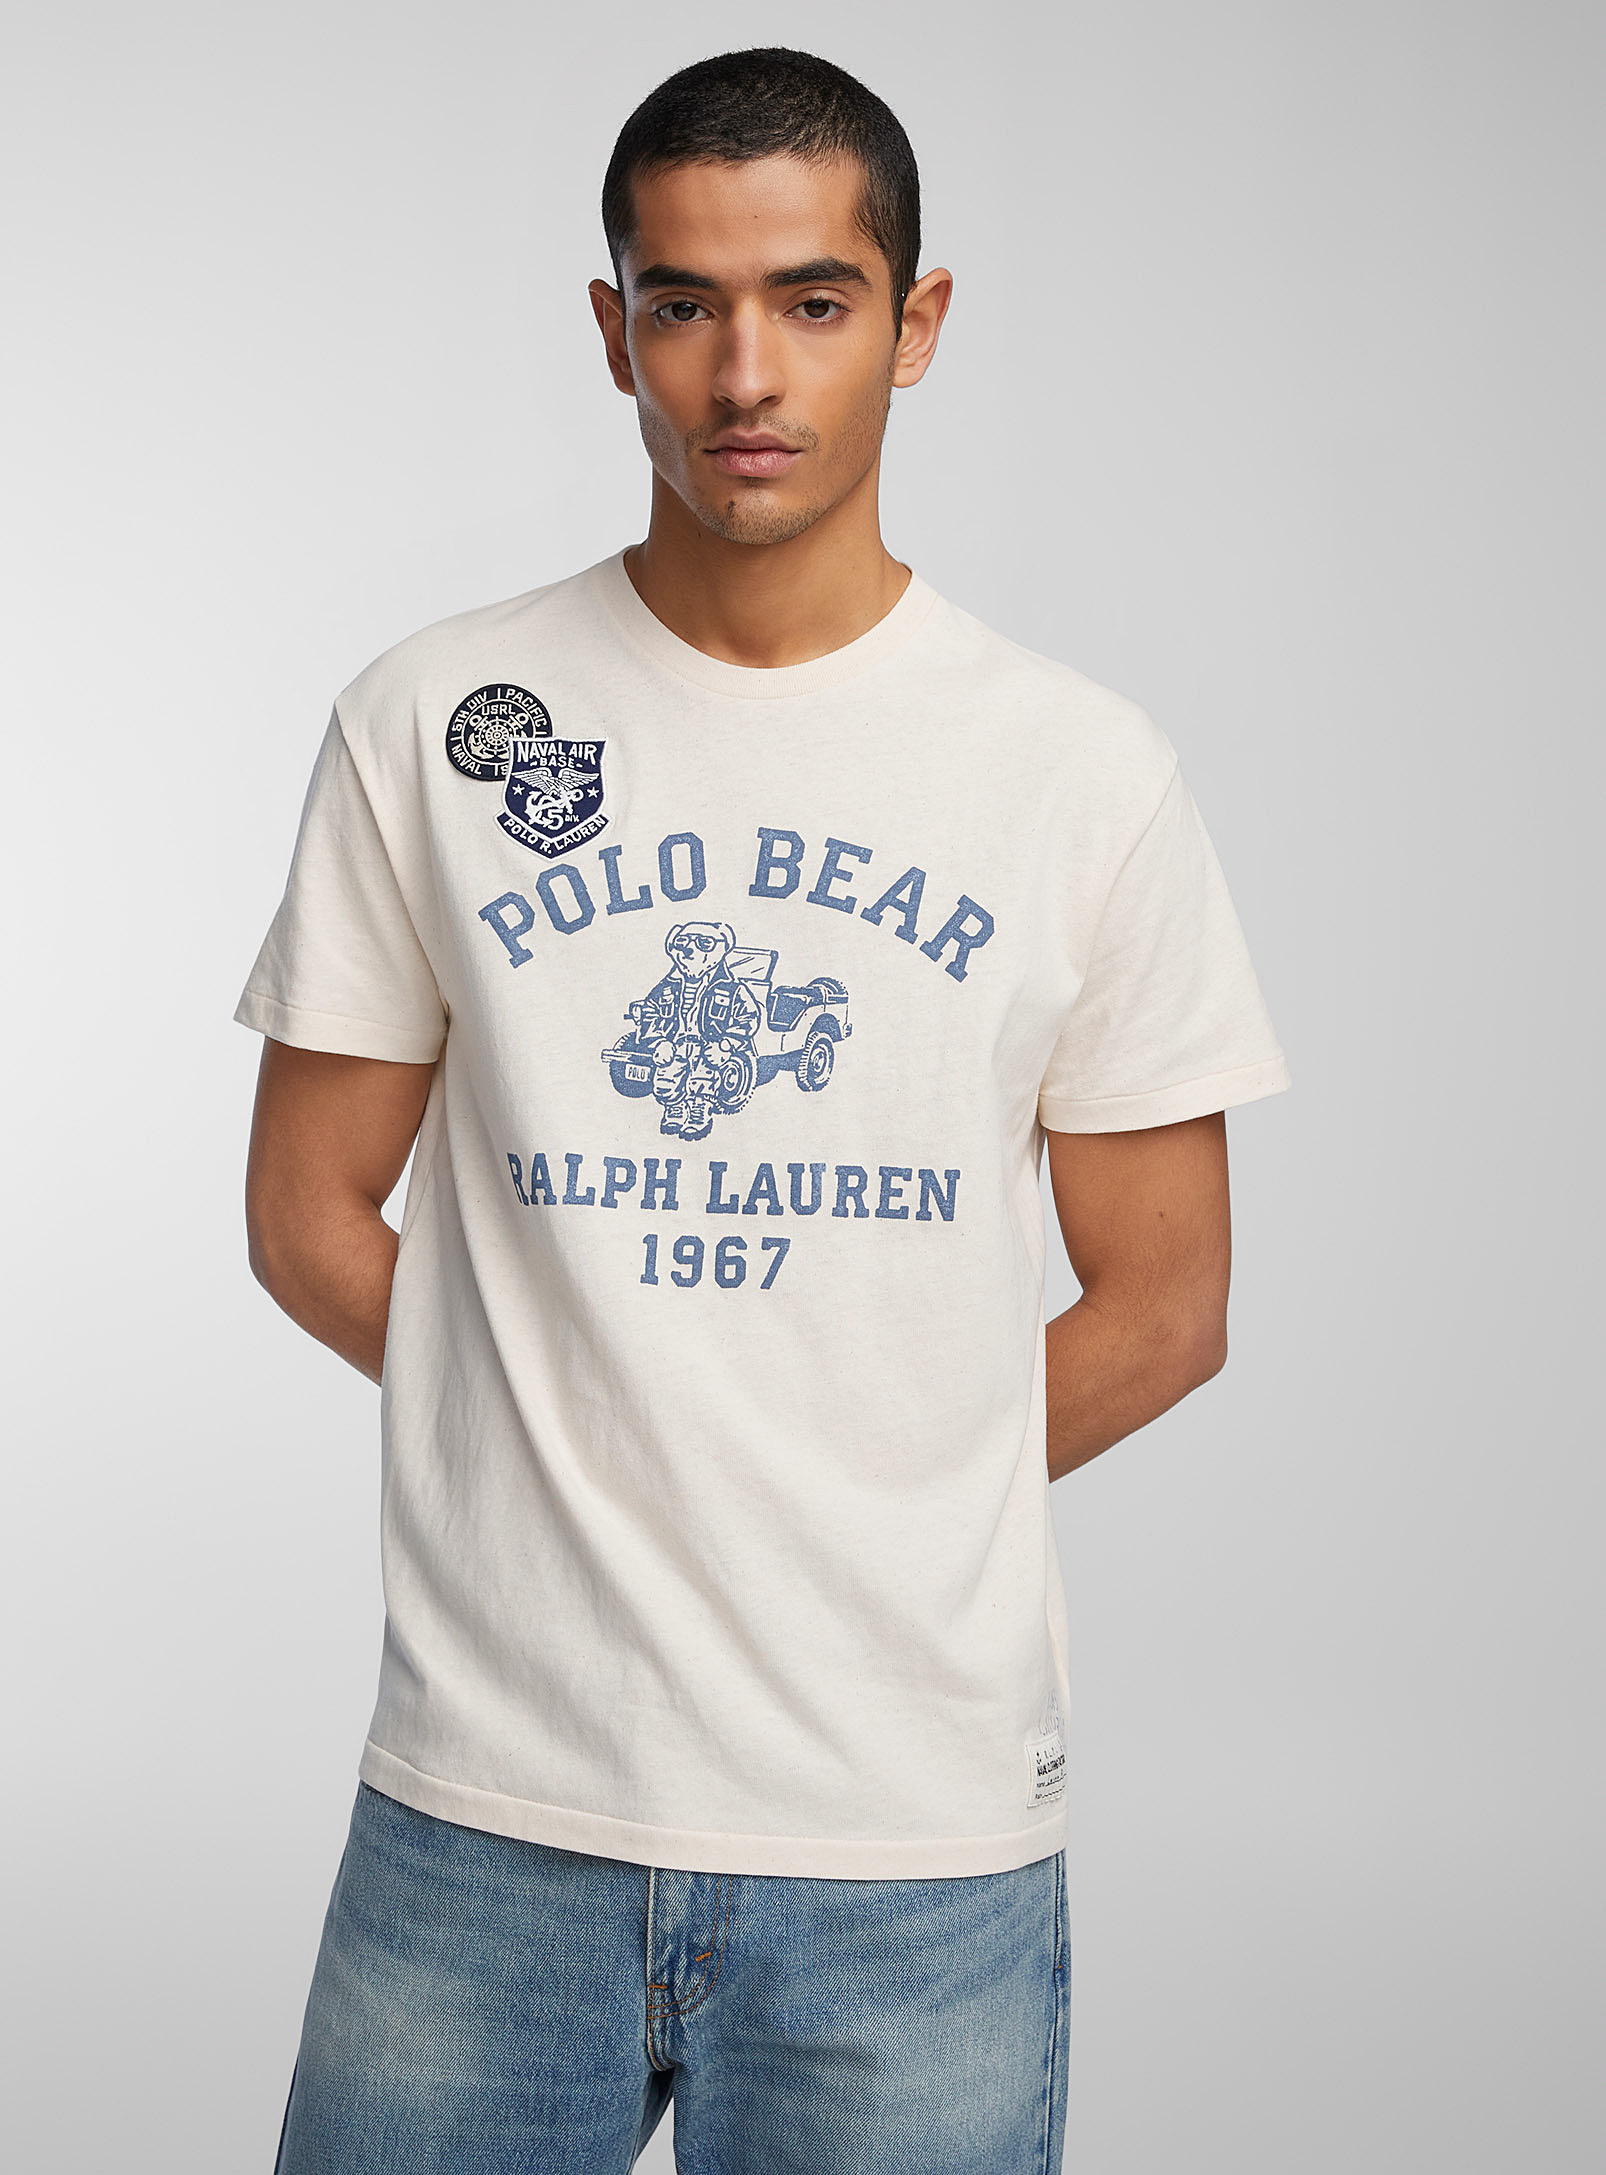 Polo Shirt Ralph Lauren - Men's Naval Air teddy bear T-shirt